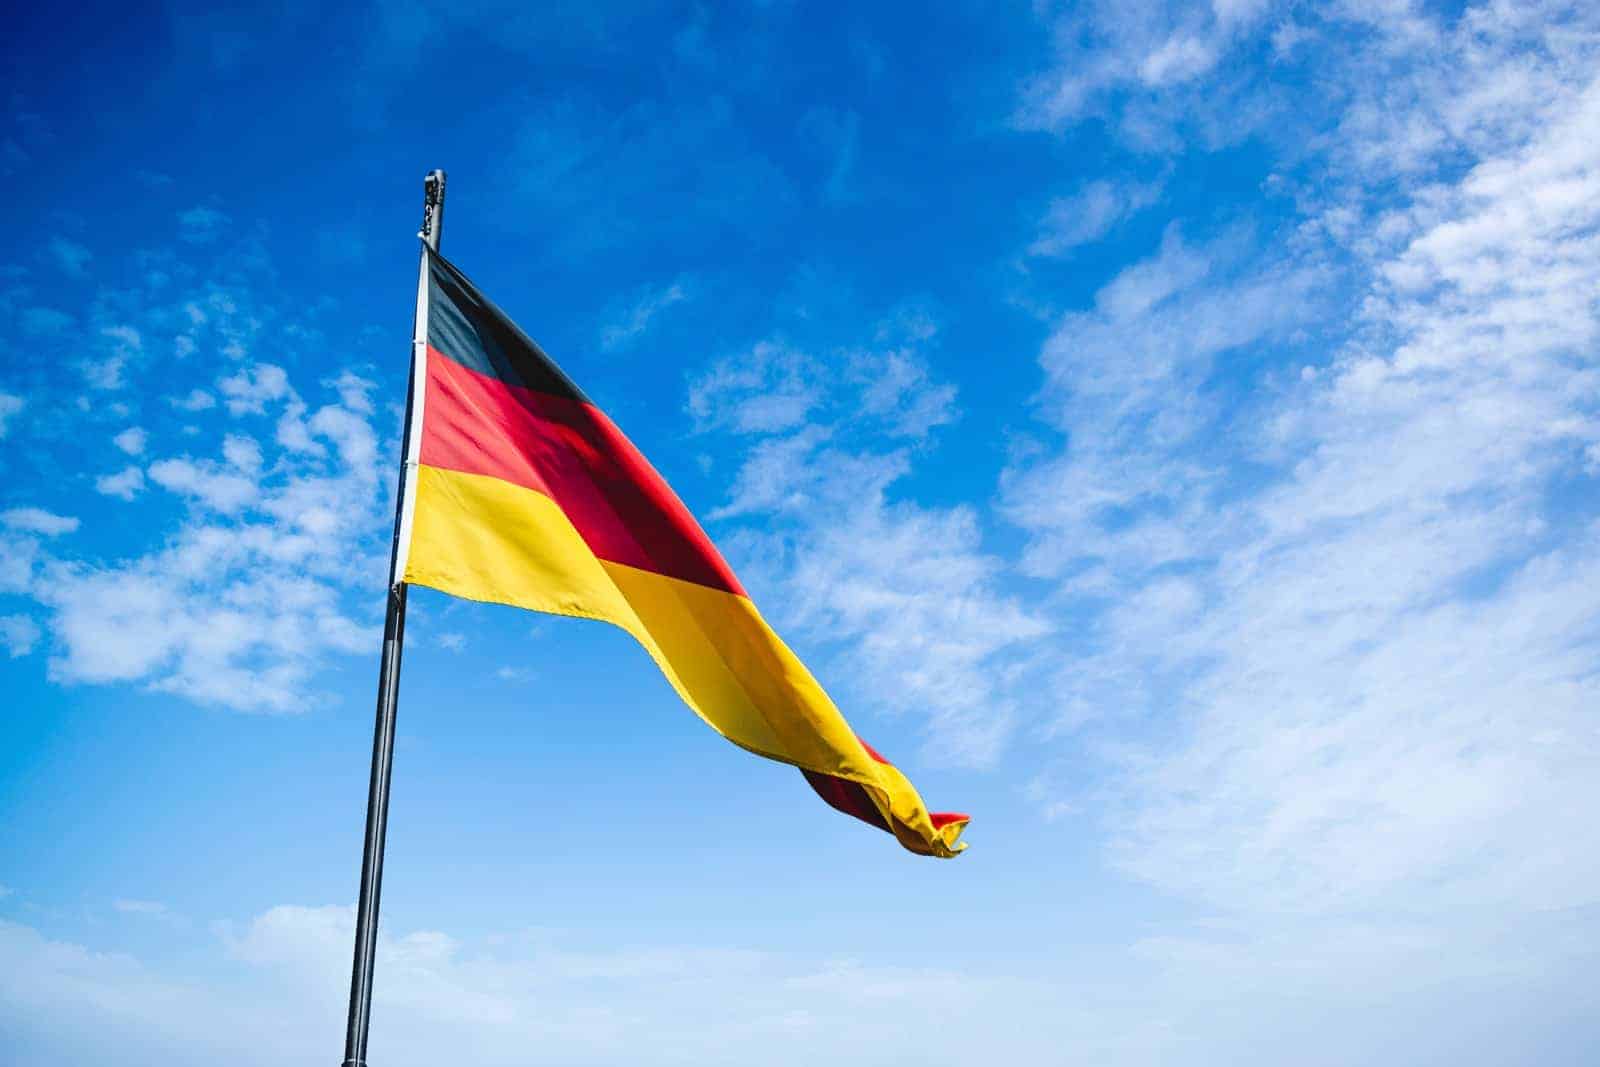 Is Duitsland echt de meest cryptovriendelijke jurisdictie?